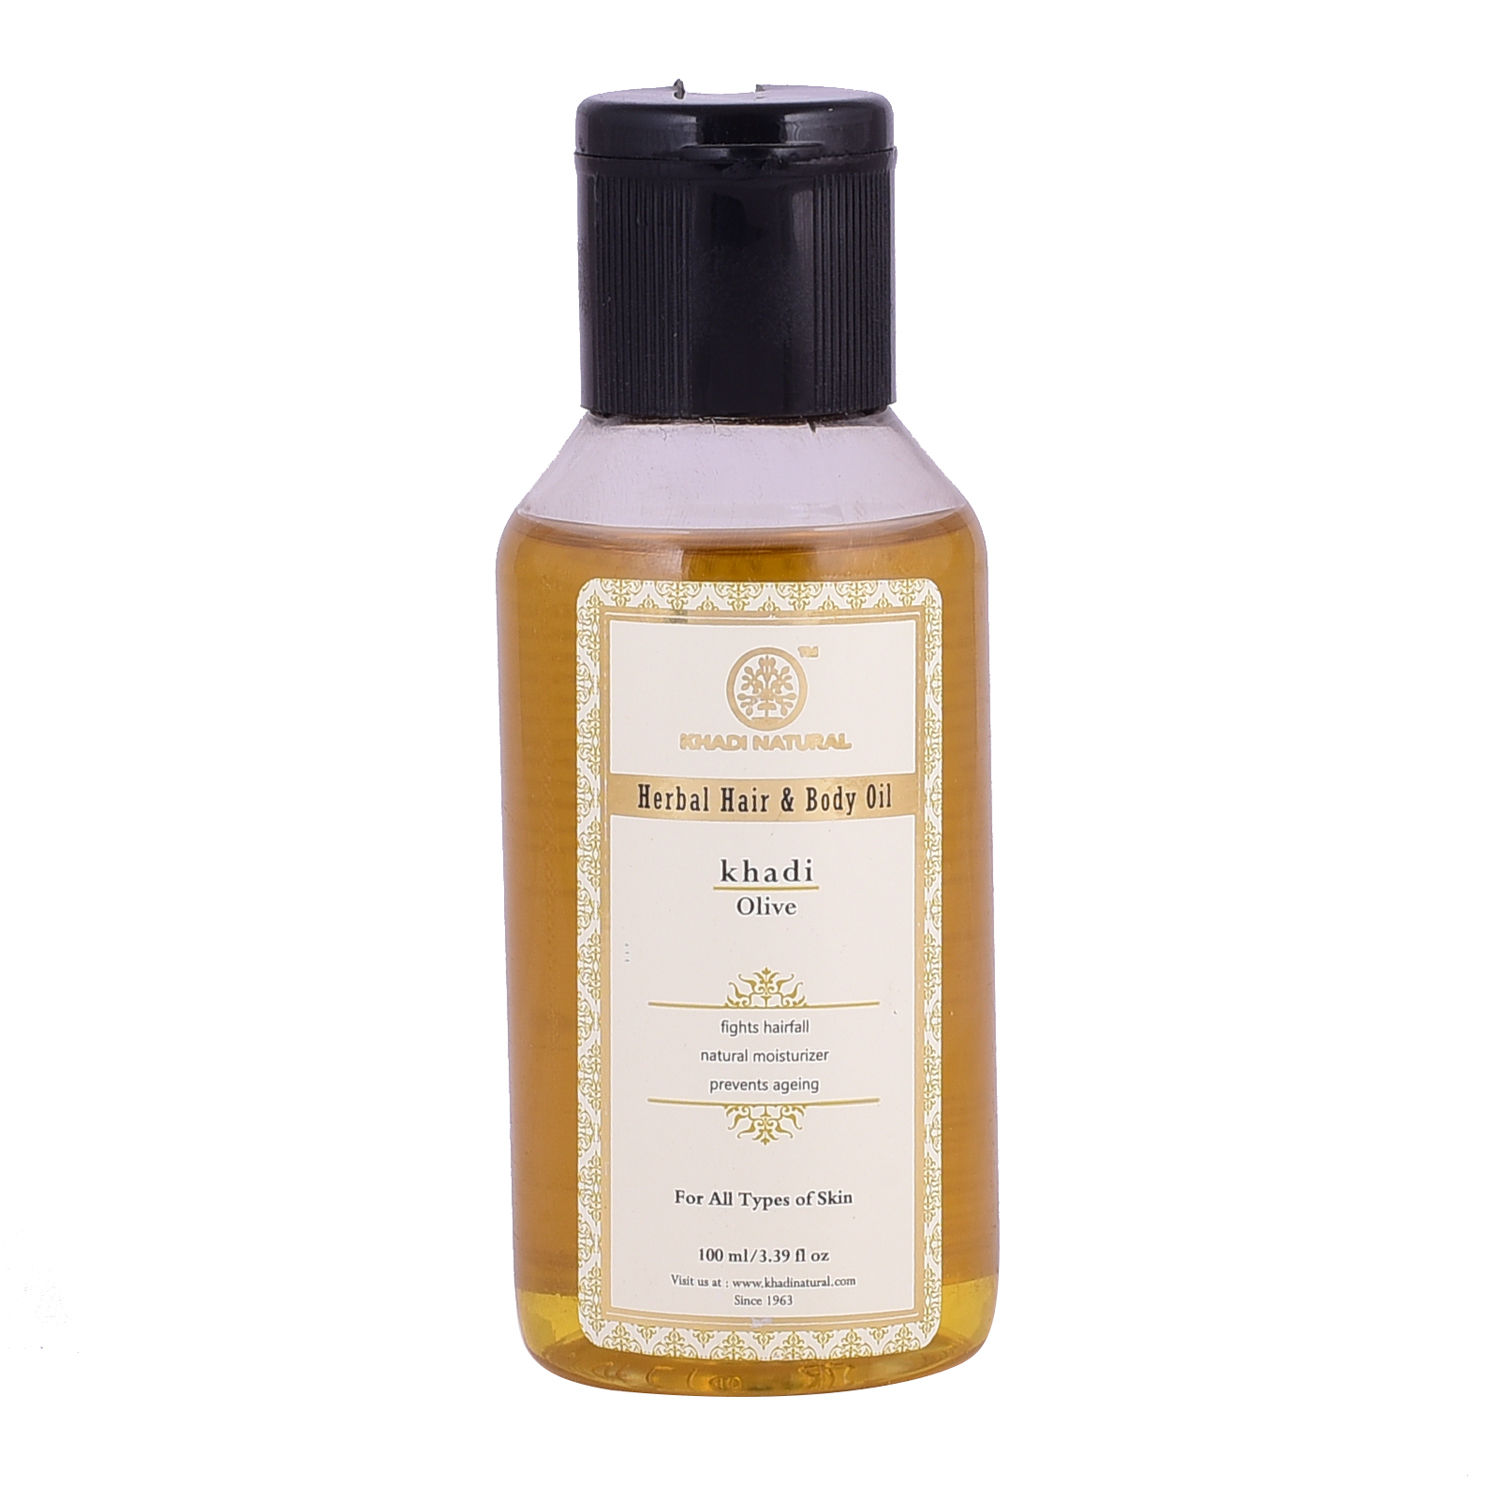 Khadi Natural Ayurvedic Herbal Olive Hair and Body Oil